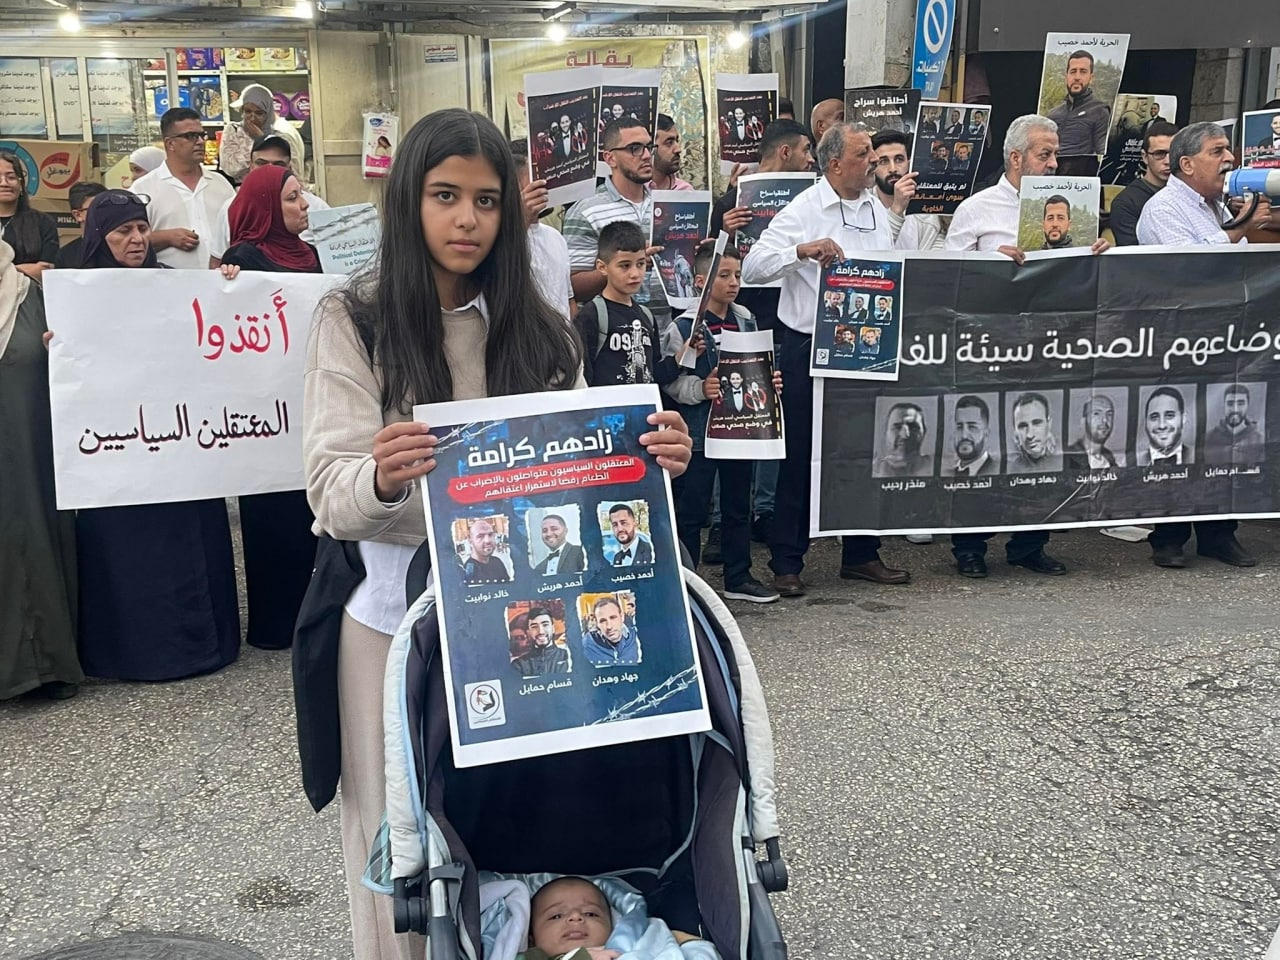 اعتصام في رام الله للمطالبة بإنقاذ حياة 5 معتقلين لدى الأمن